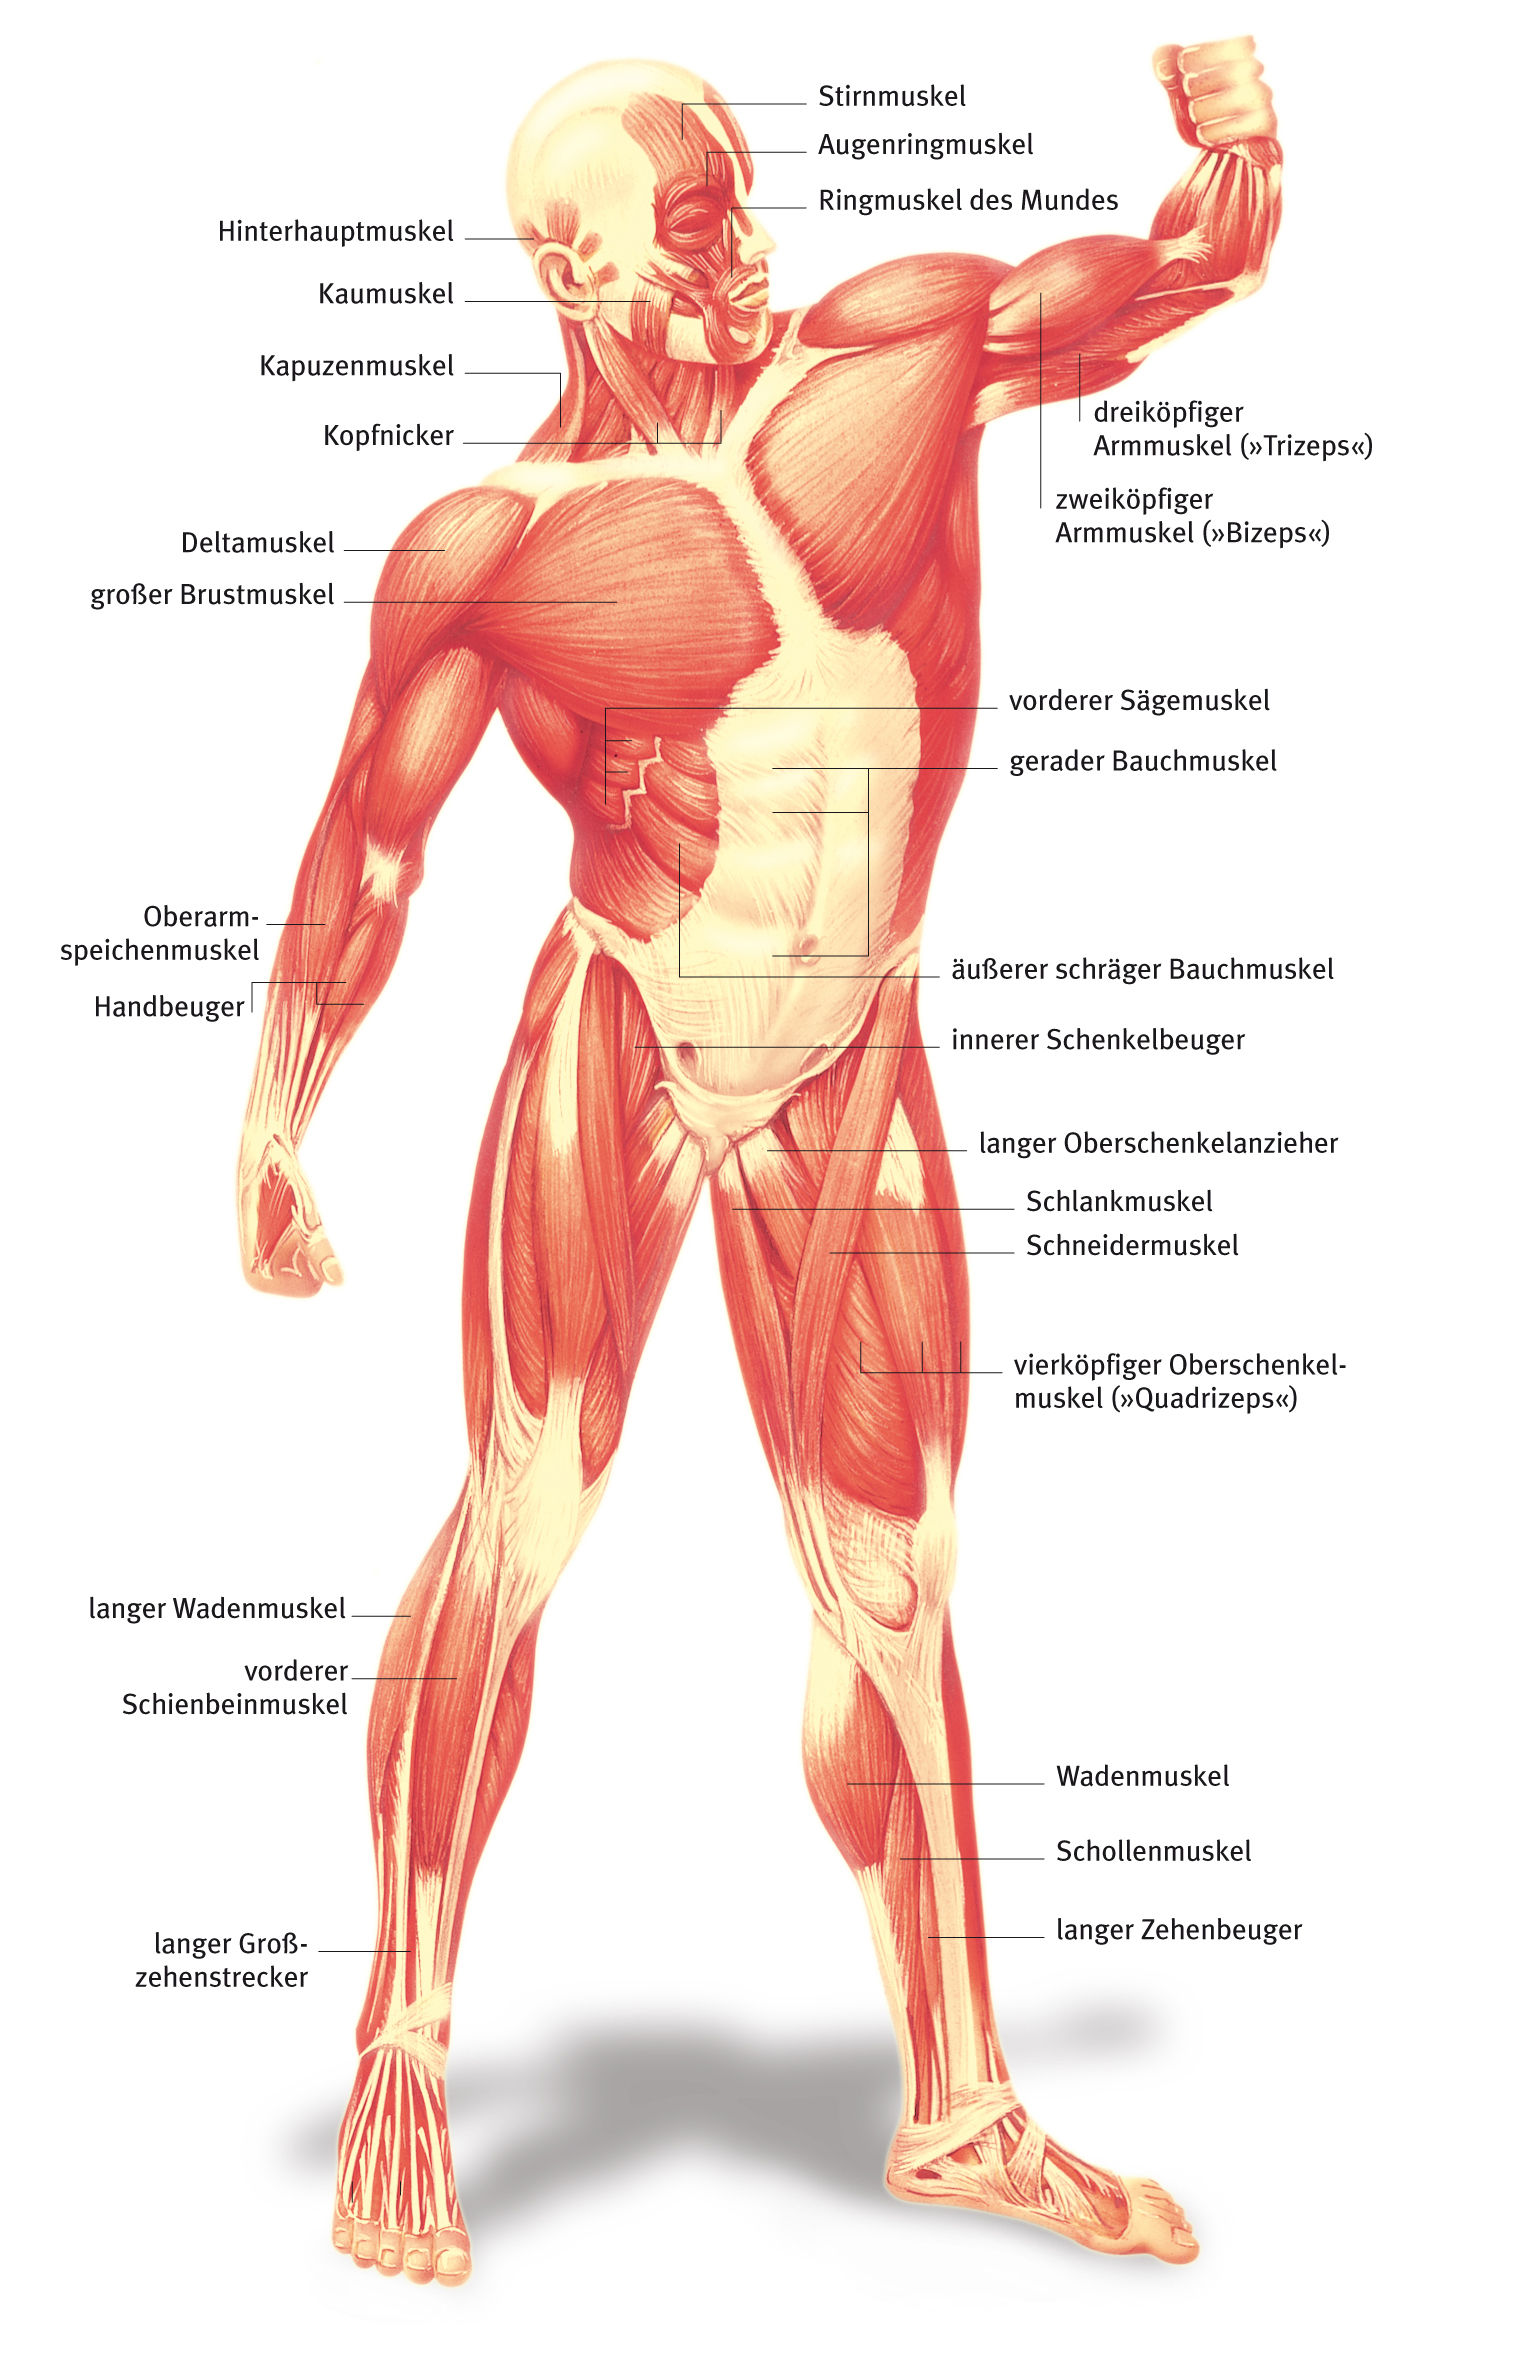 Muskel, aus dem Gesundheitslexikon  Gesundheit, Medizin und Heilkunde auf